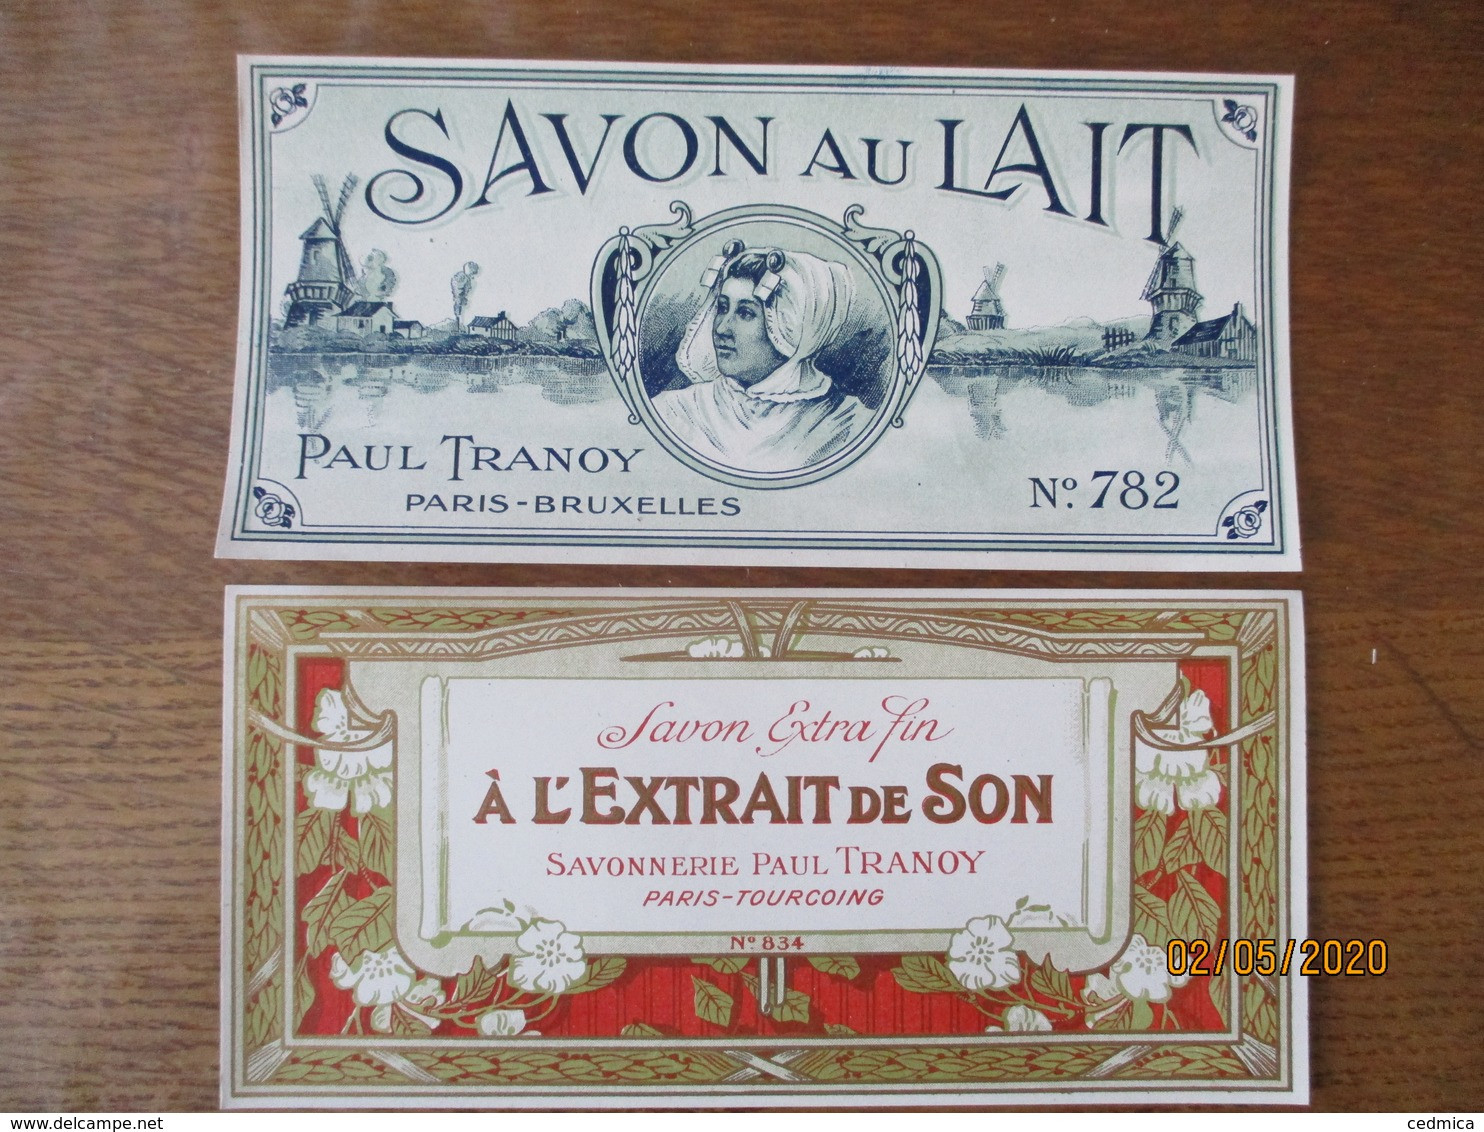 2 ETIQUETTES SAVON AU LAIT PAUL TRANOY PARIS-BRUXELLES ET SAVON A L'EXTRAIT DE SON SAVONNERIE PAUL TRANOY PARIS TOURCOIN - Etiquettes